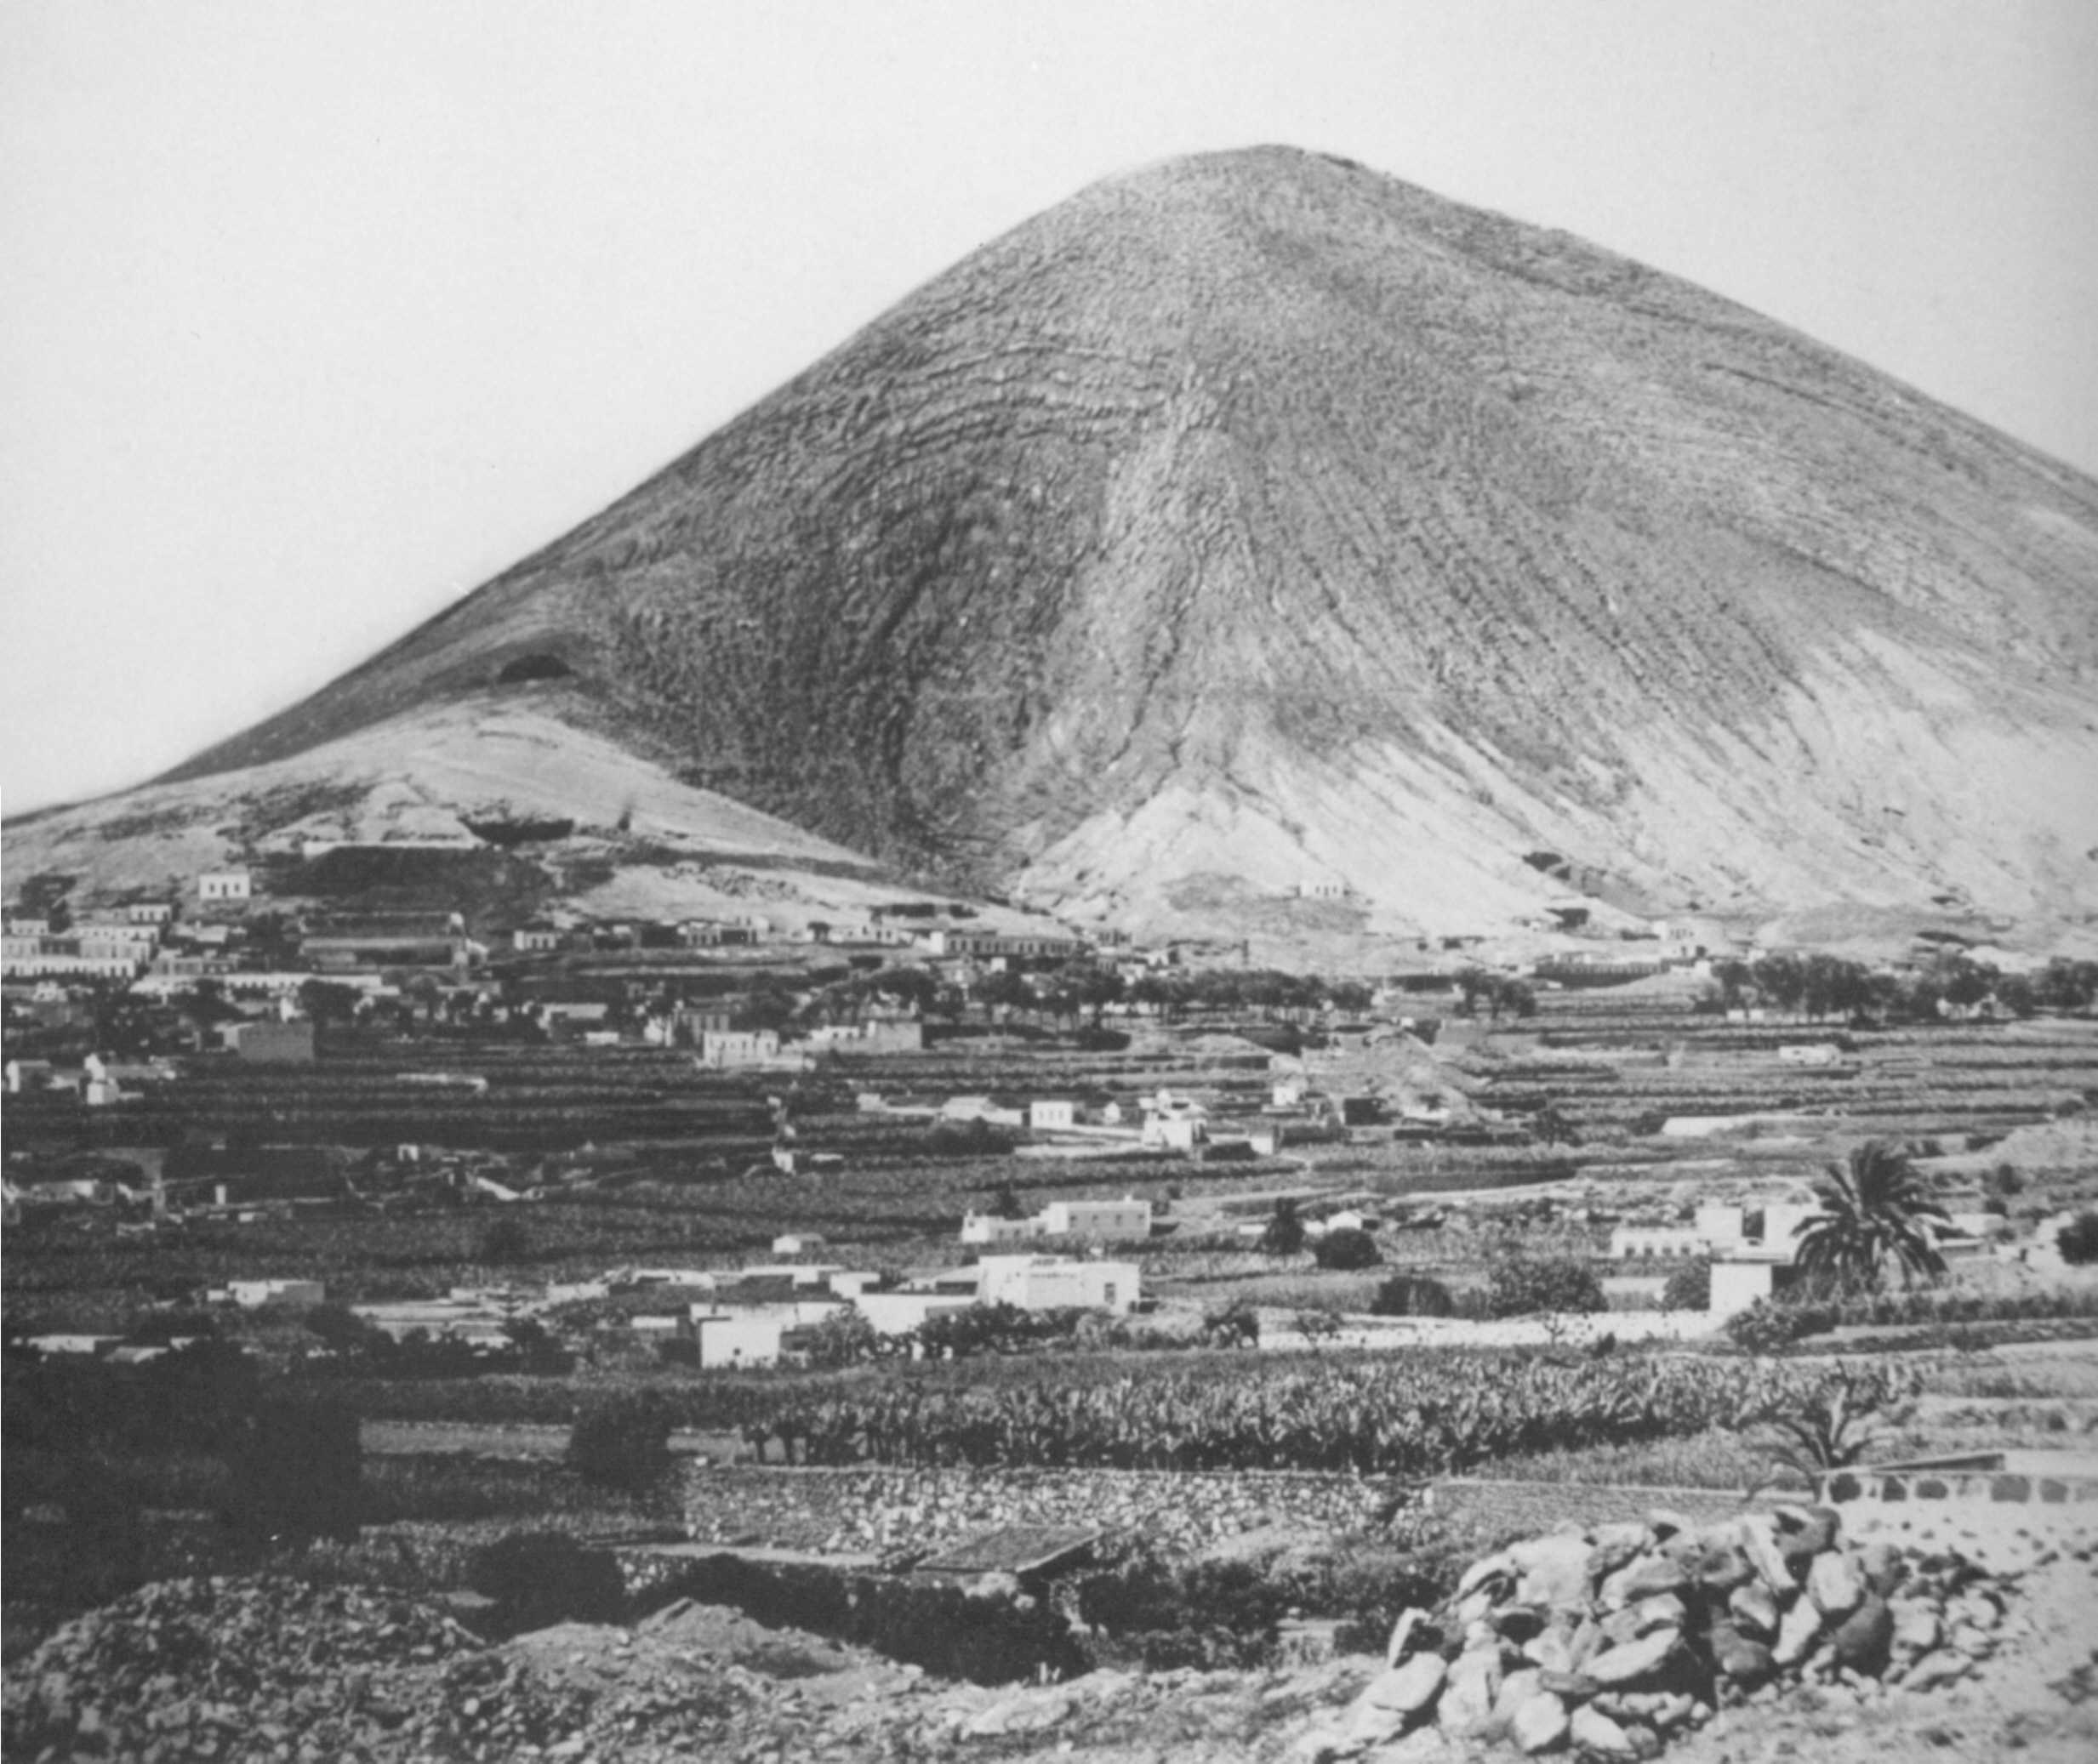 La Montaña y su caldera vista desde los arrabales de la Vega hacia los años treinta del XX.
